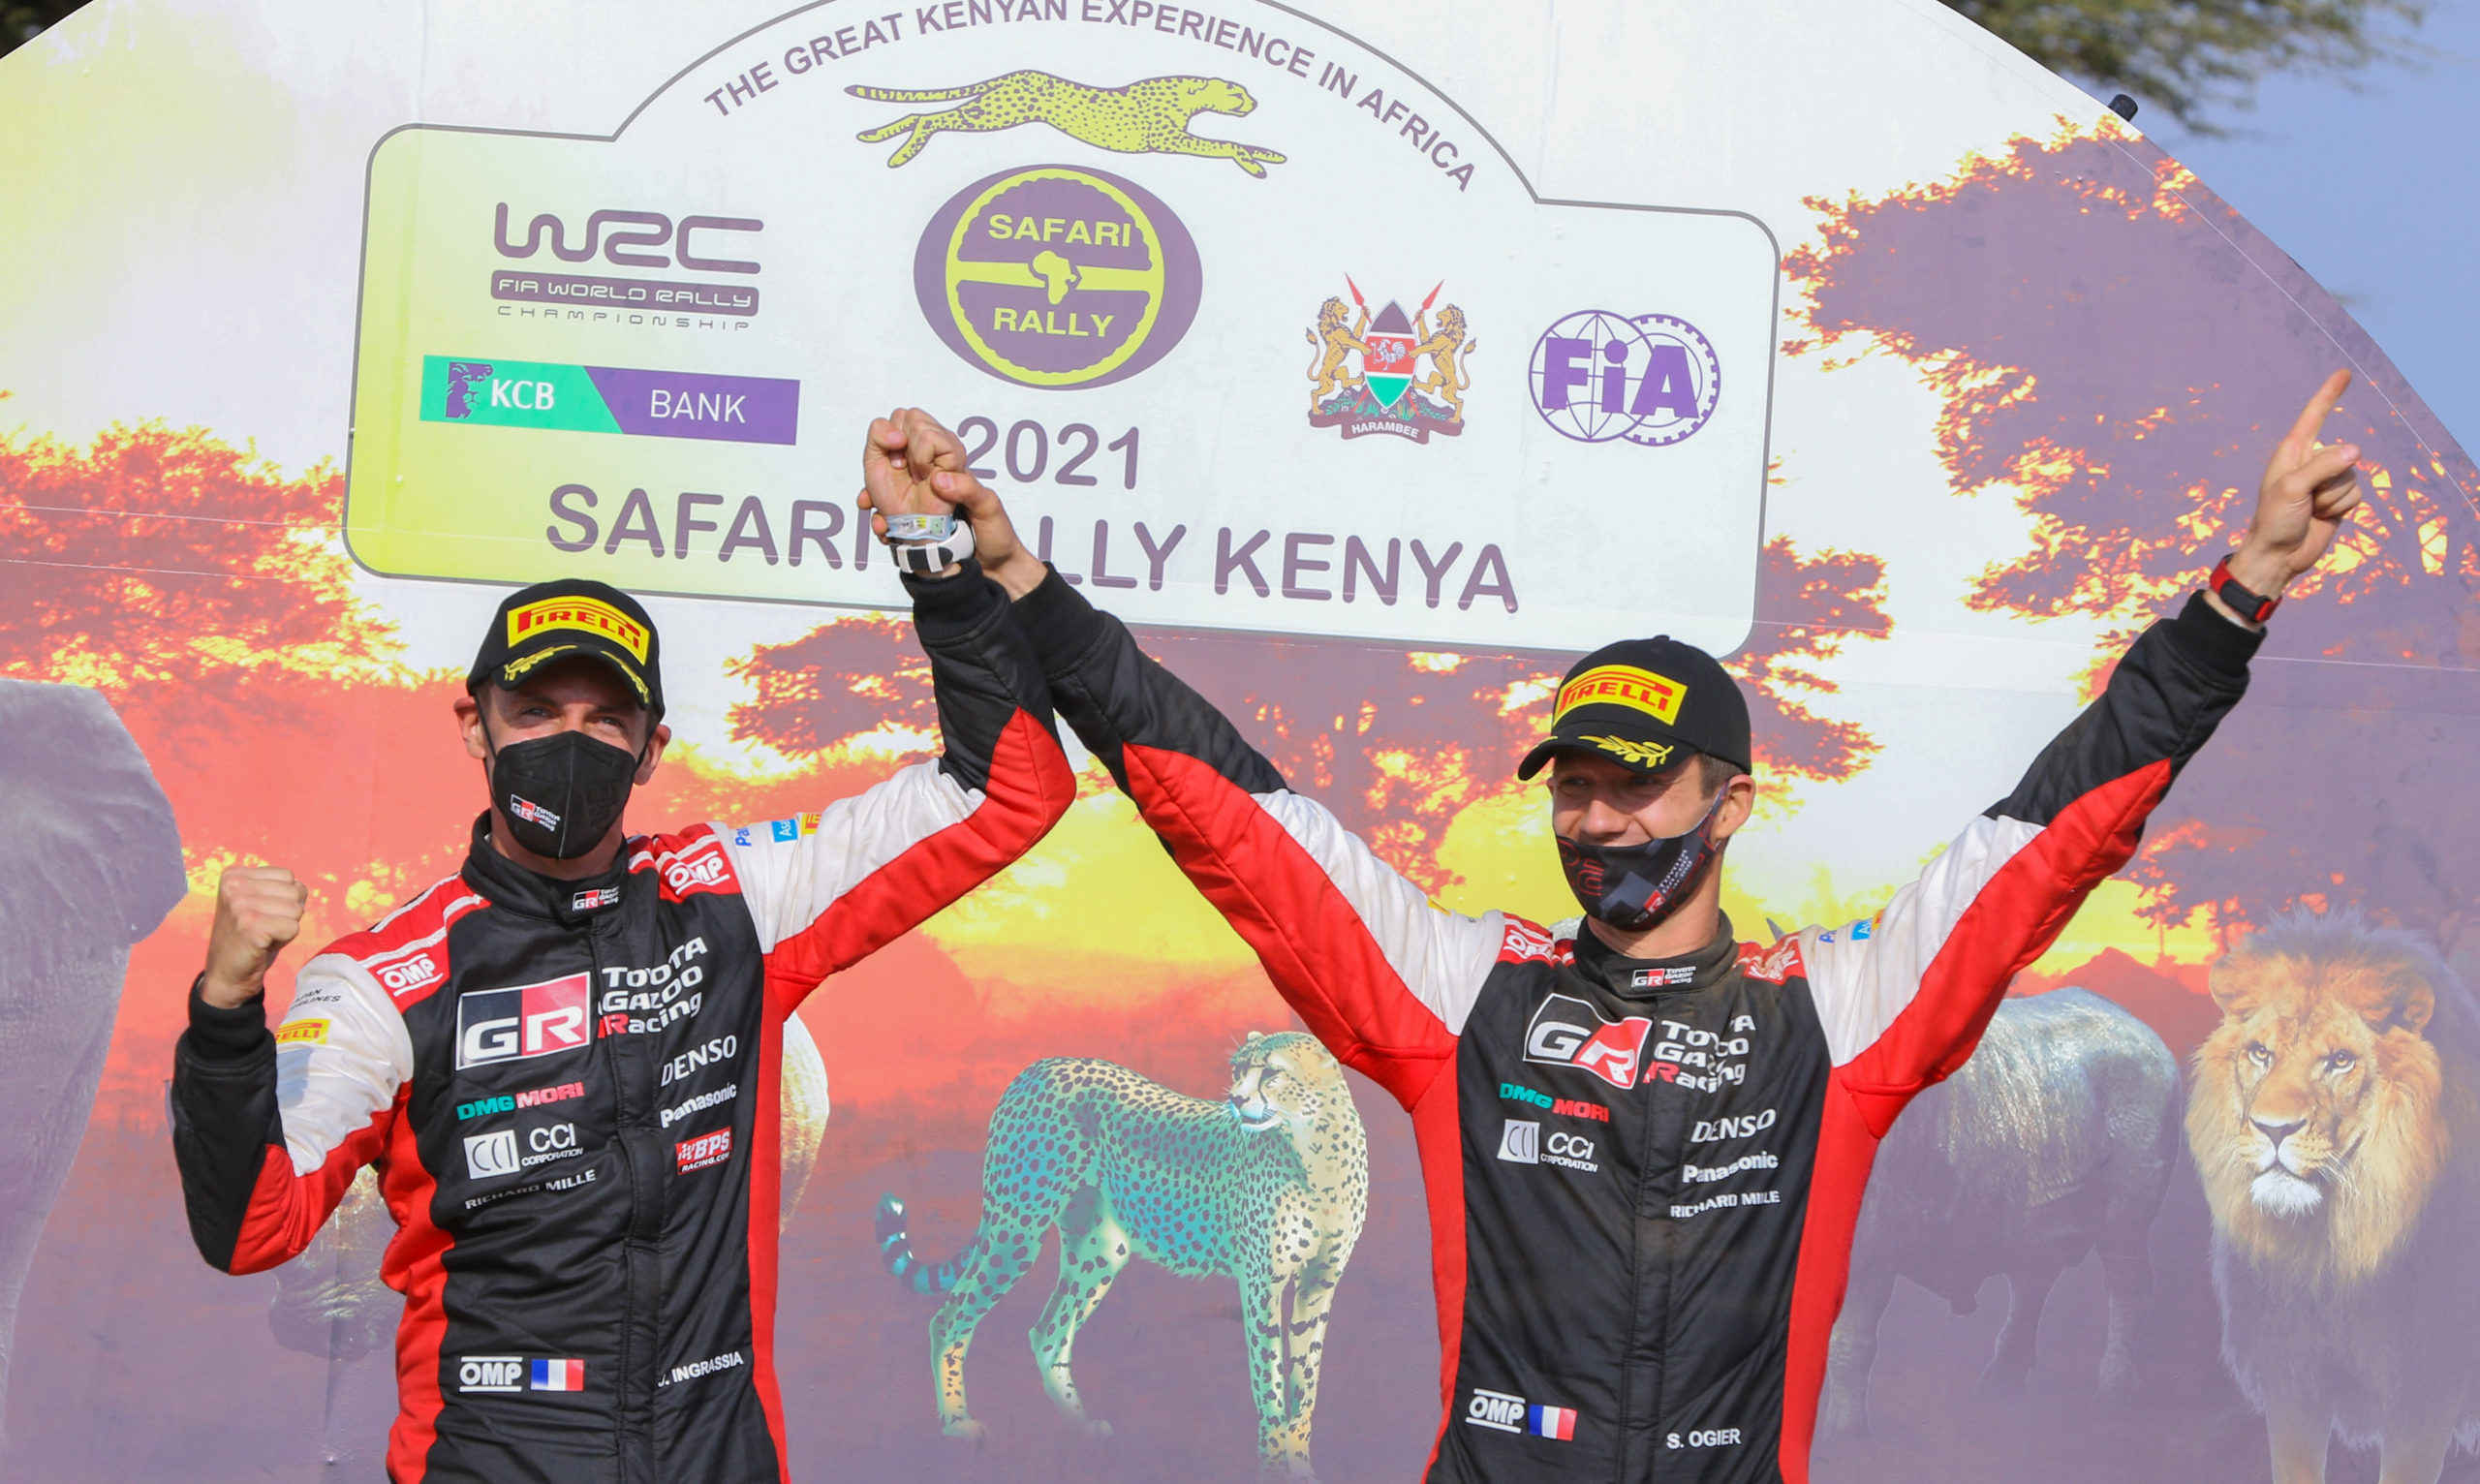 safari rally racing in kenya